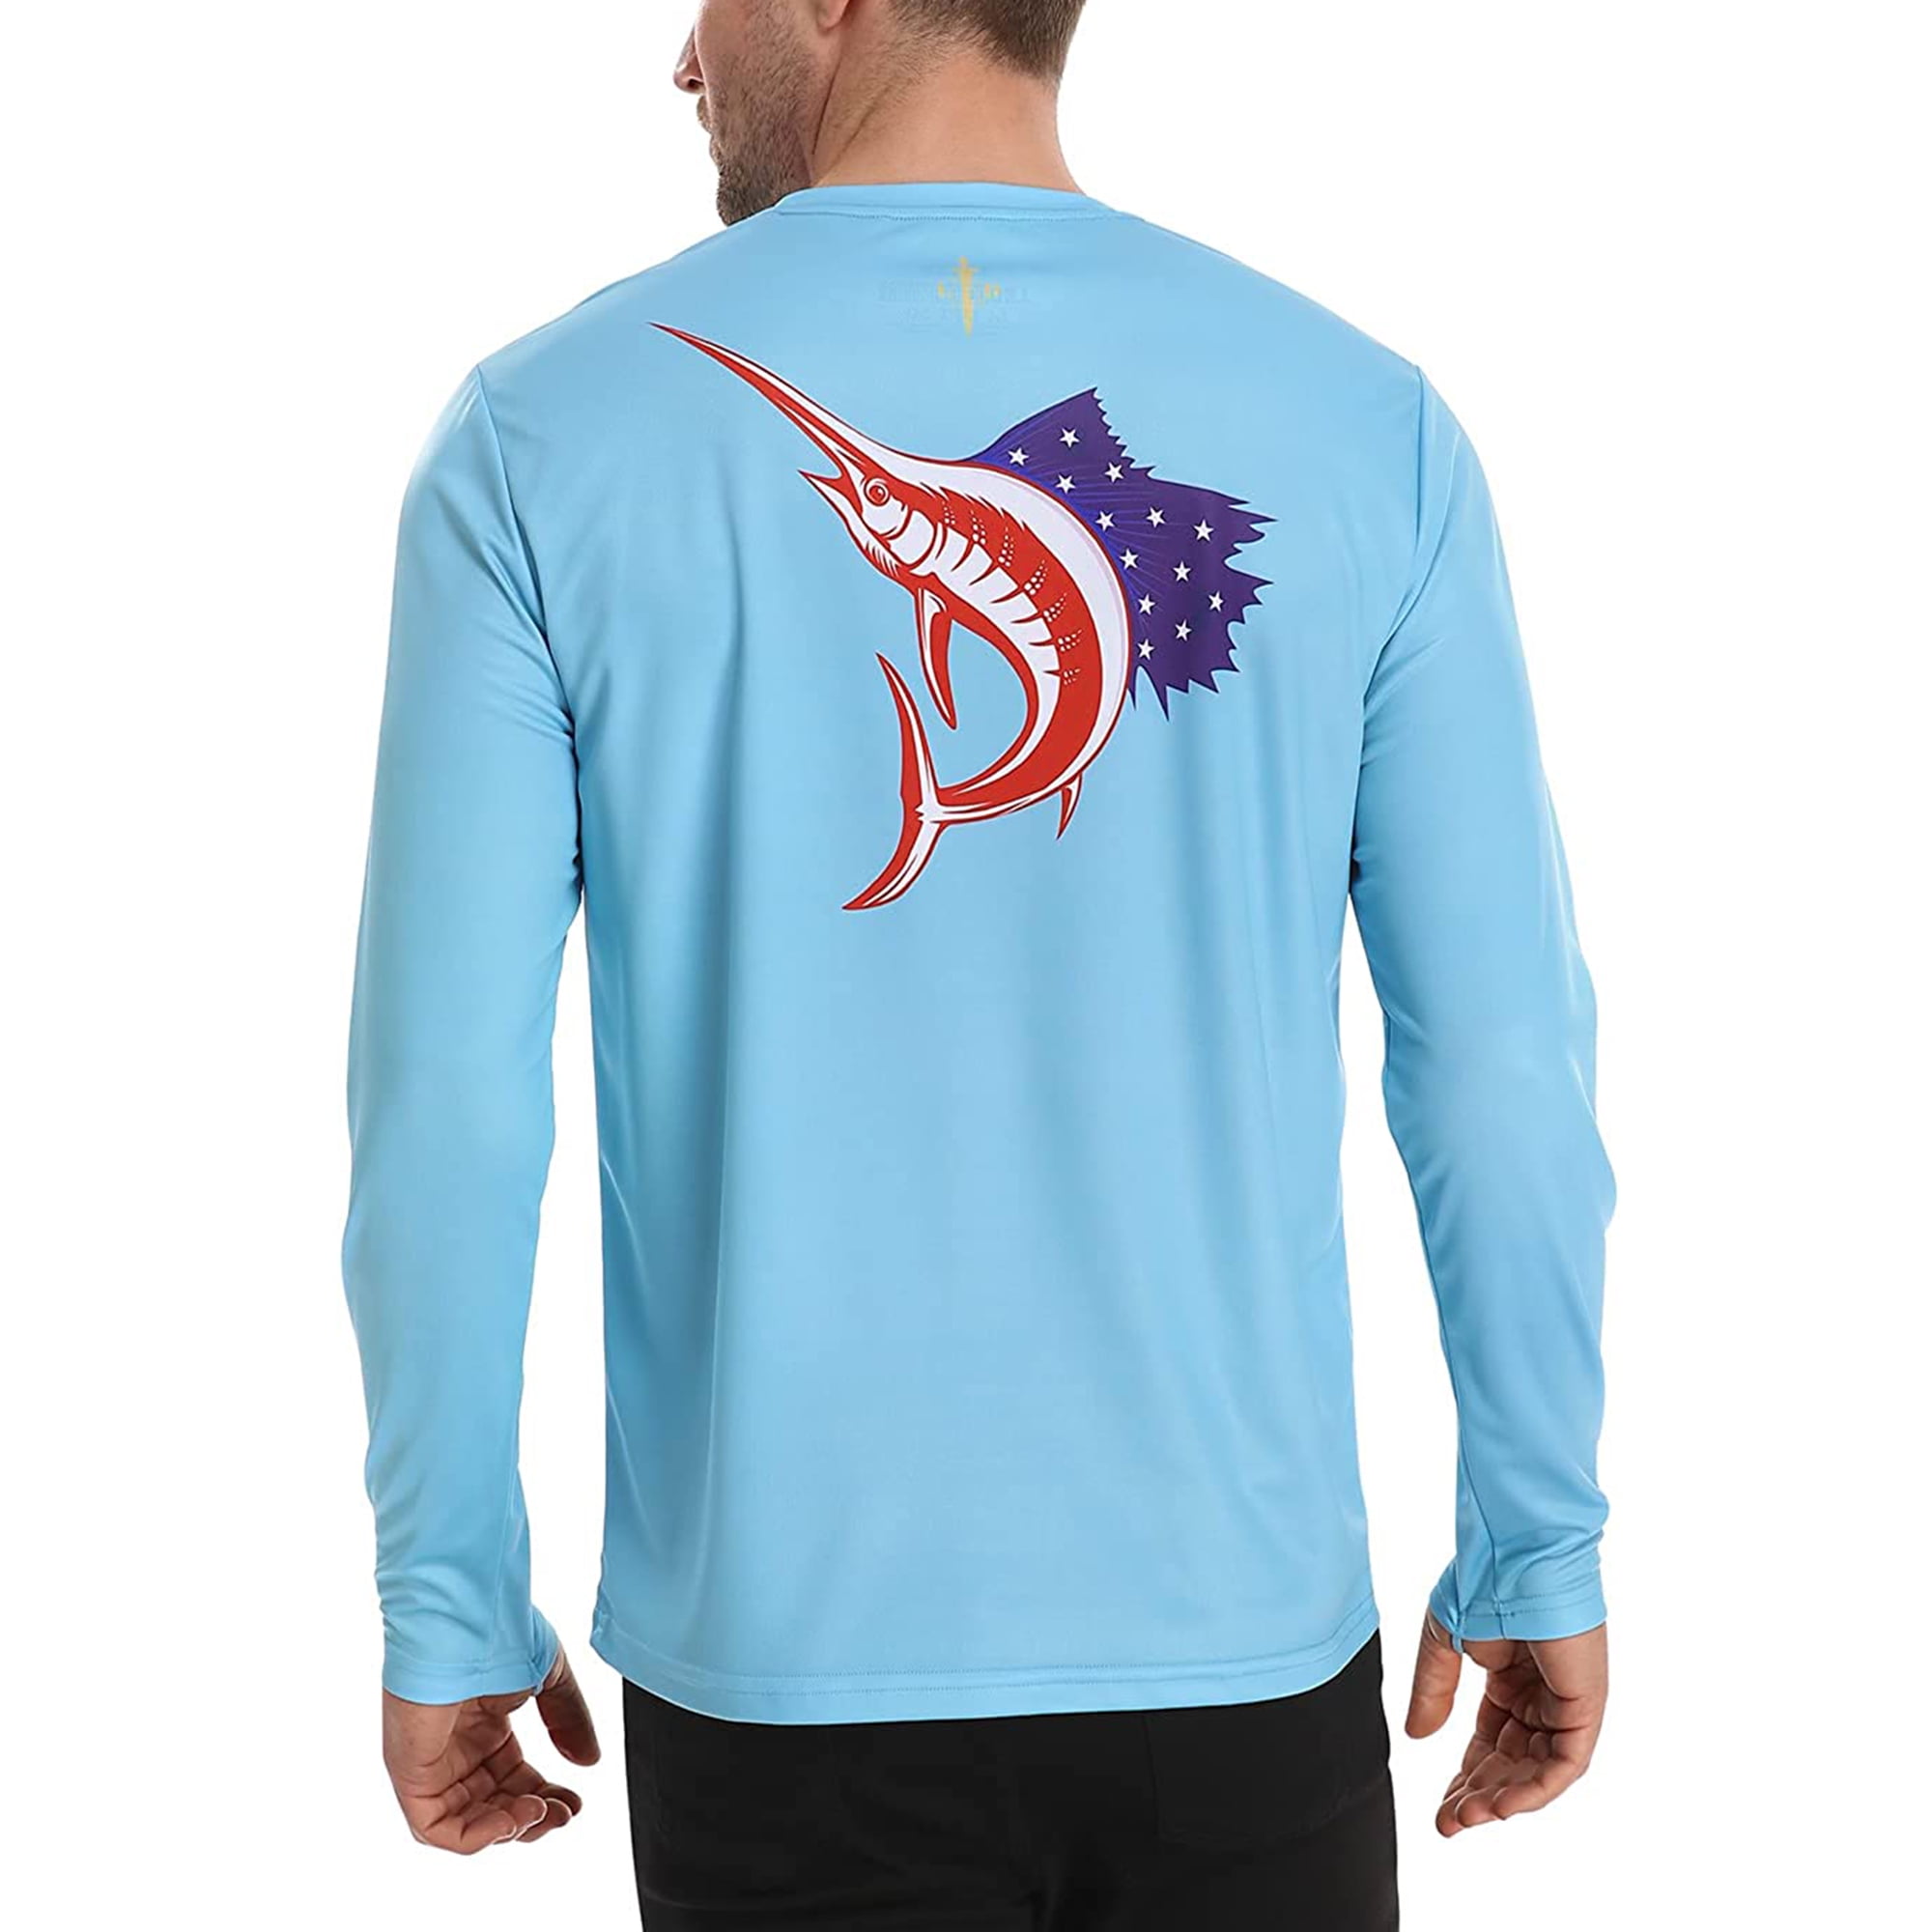 WindRider Long Sleeve Fishing Shirts for Men - Mens UV Shirt UPF